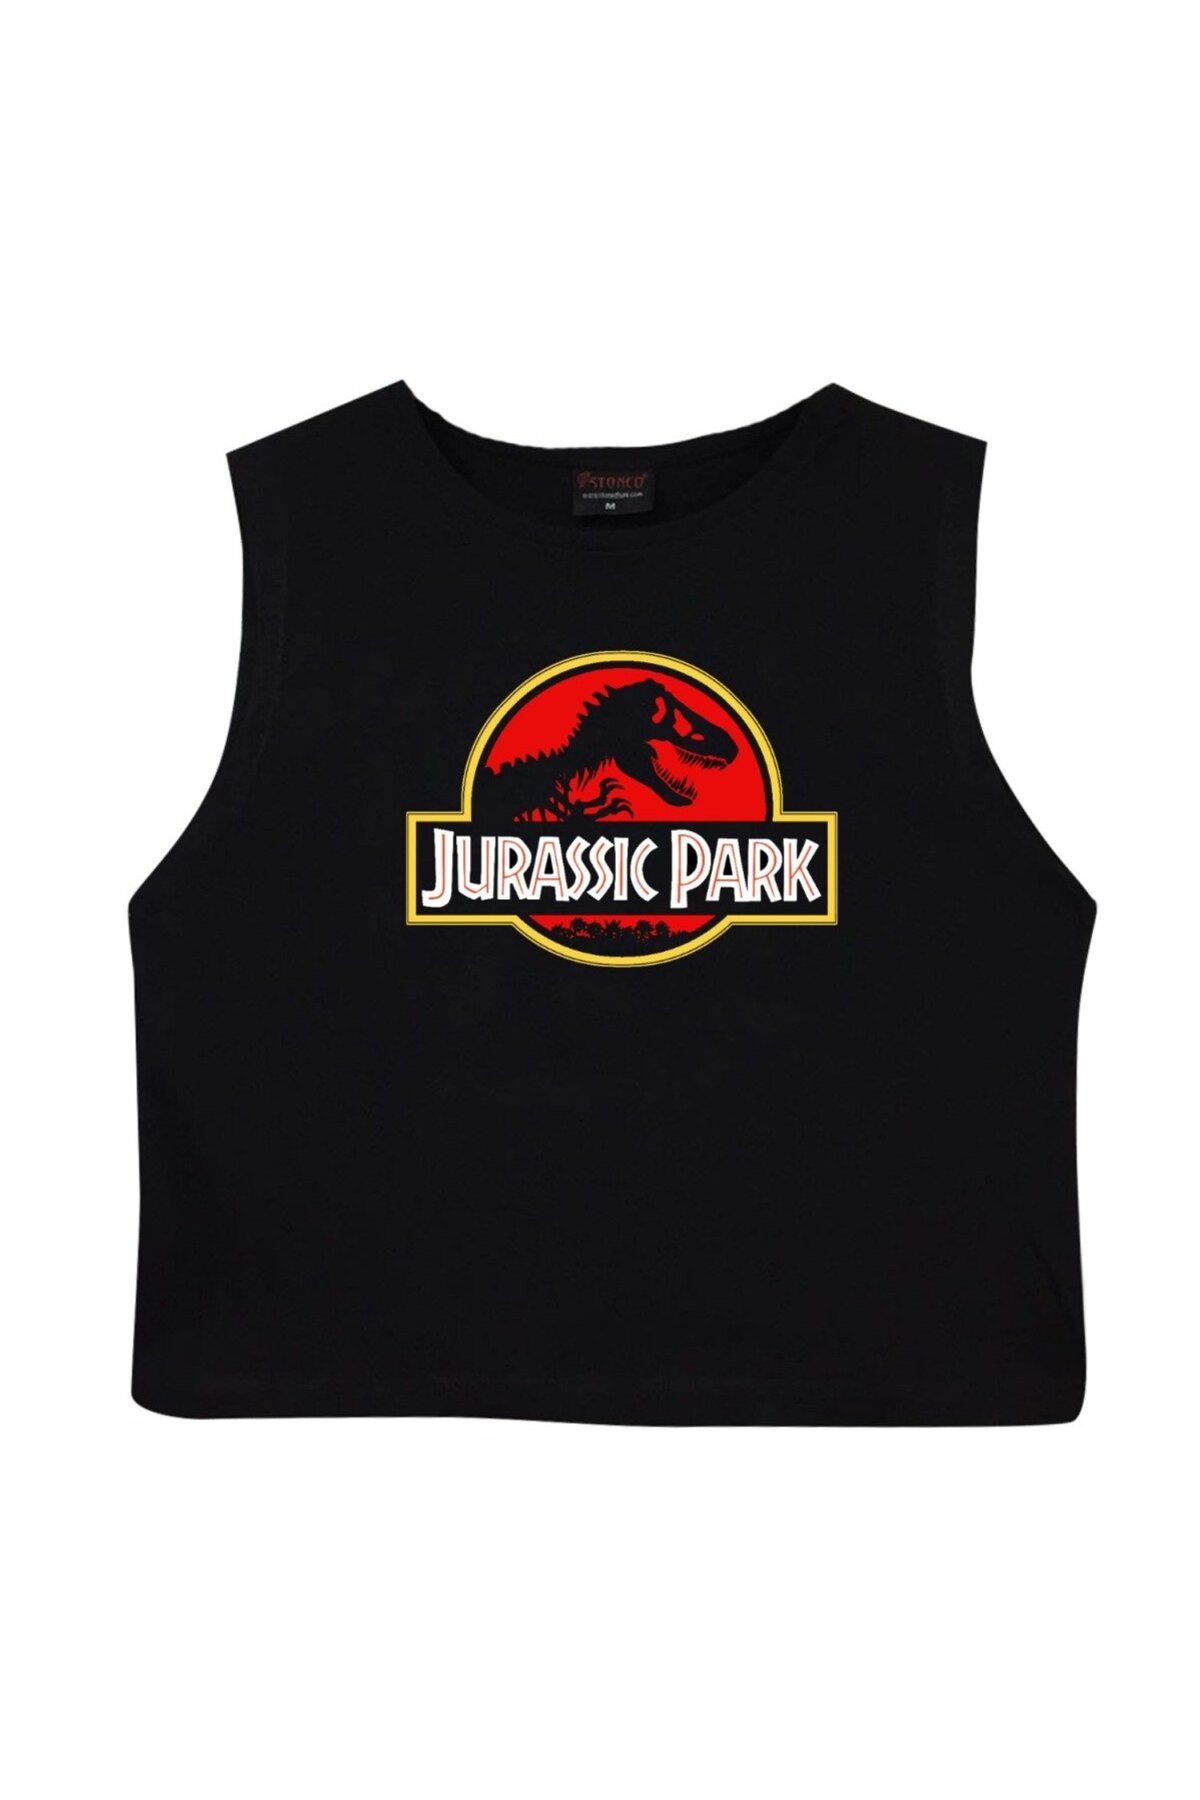 fame-stoned Jurassic Park Crop Top Baskılı Göbek Üstü-yarım T-shirt